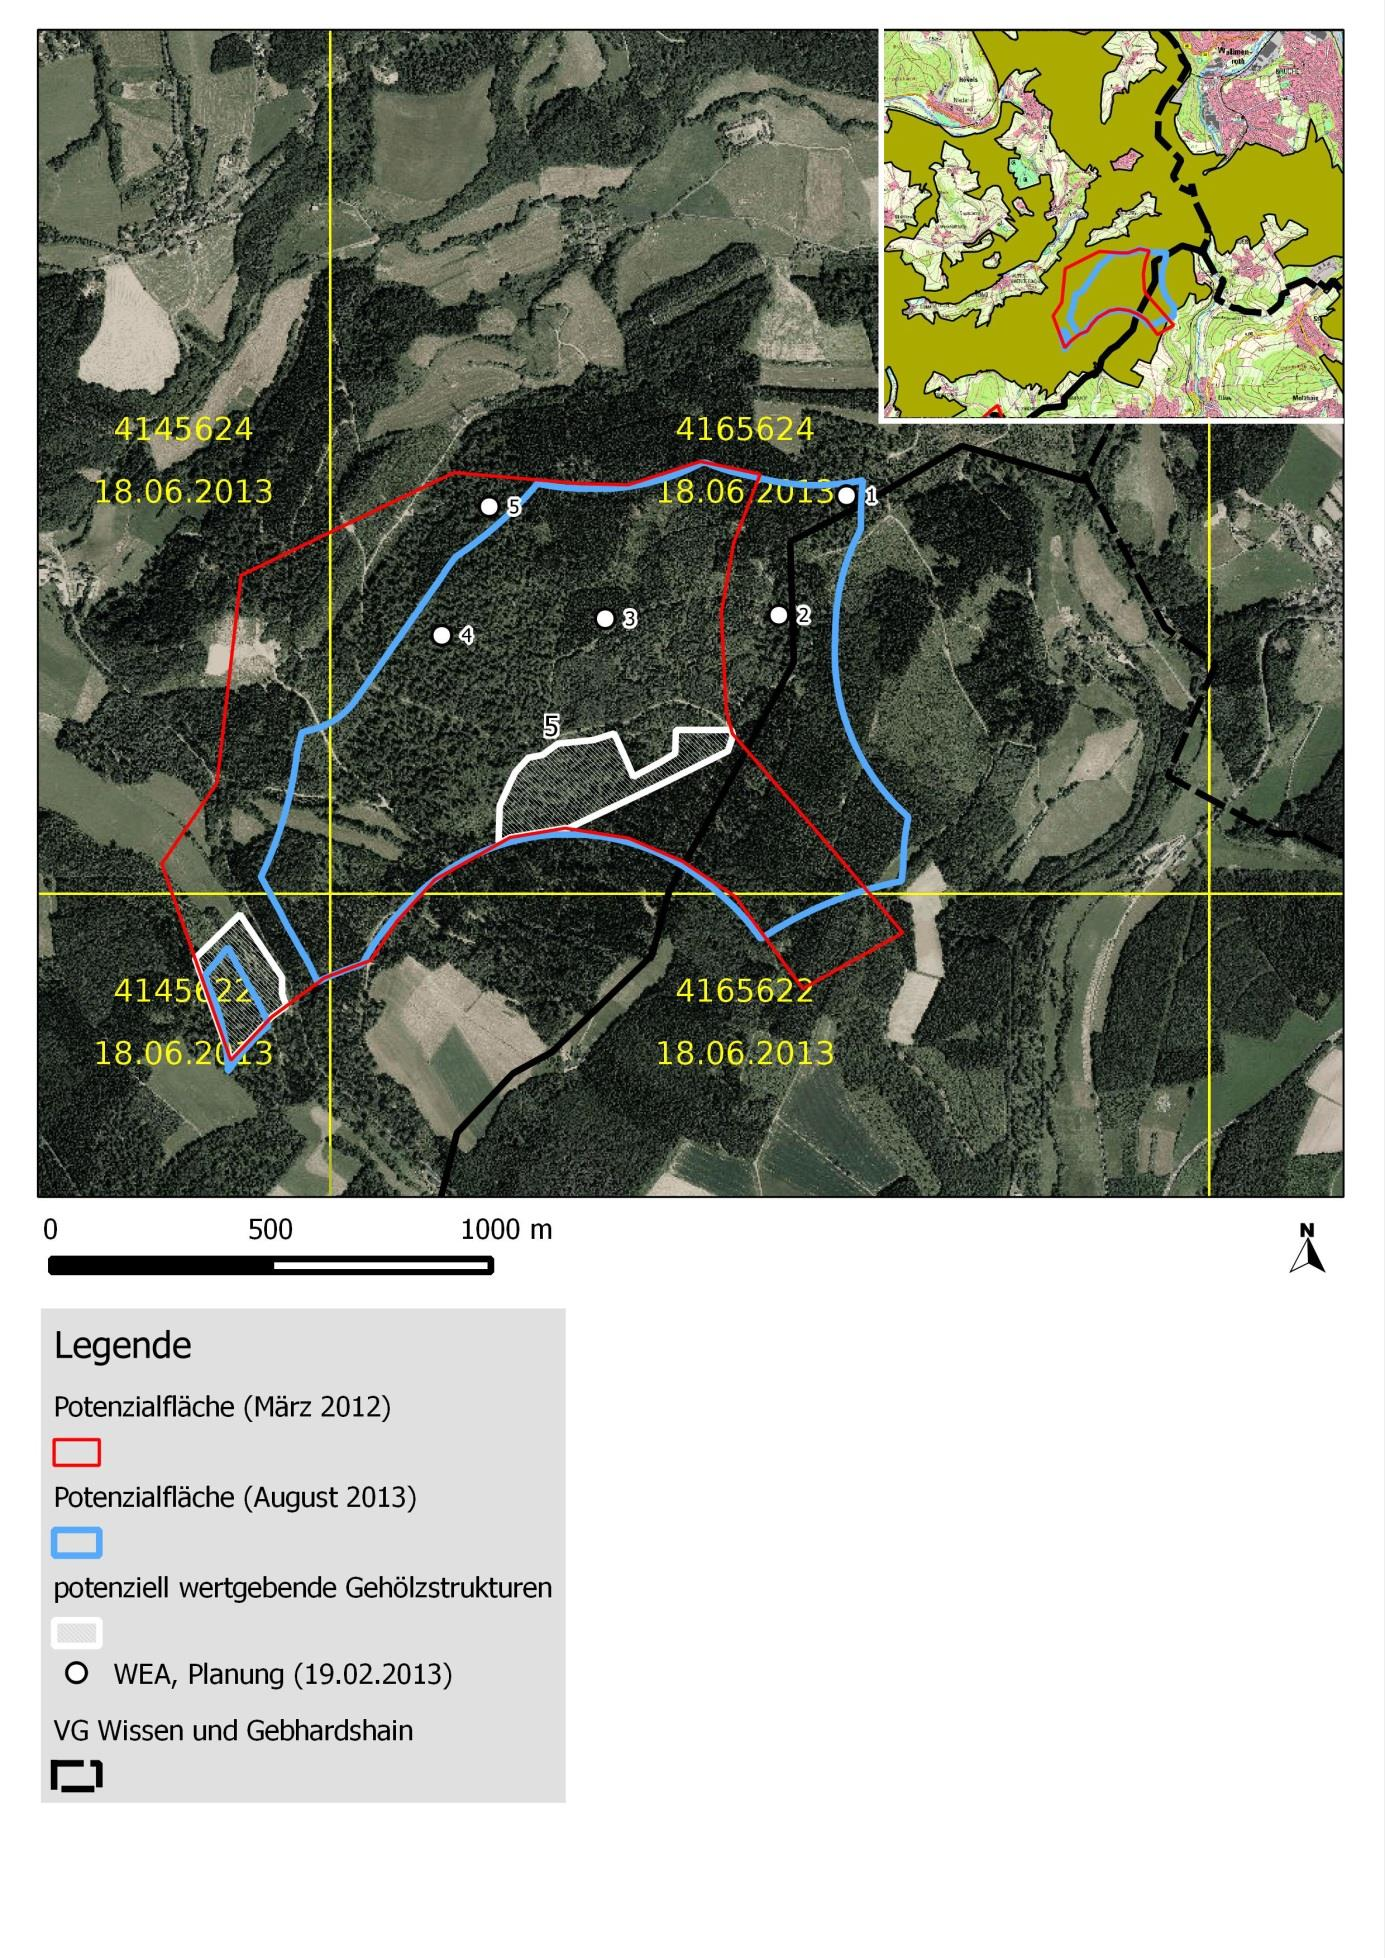 Abb. 3: Lageplan sowie Luftbild der Potenzialfläche 5 mit Darstellung der Abgrenzung im März 2012 und August 2013.